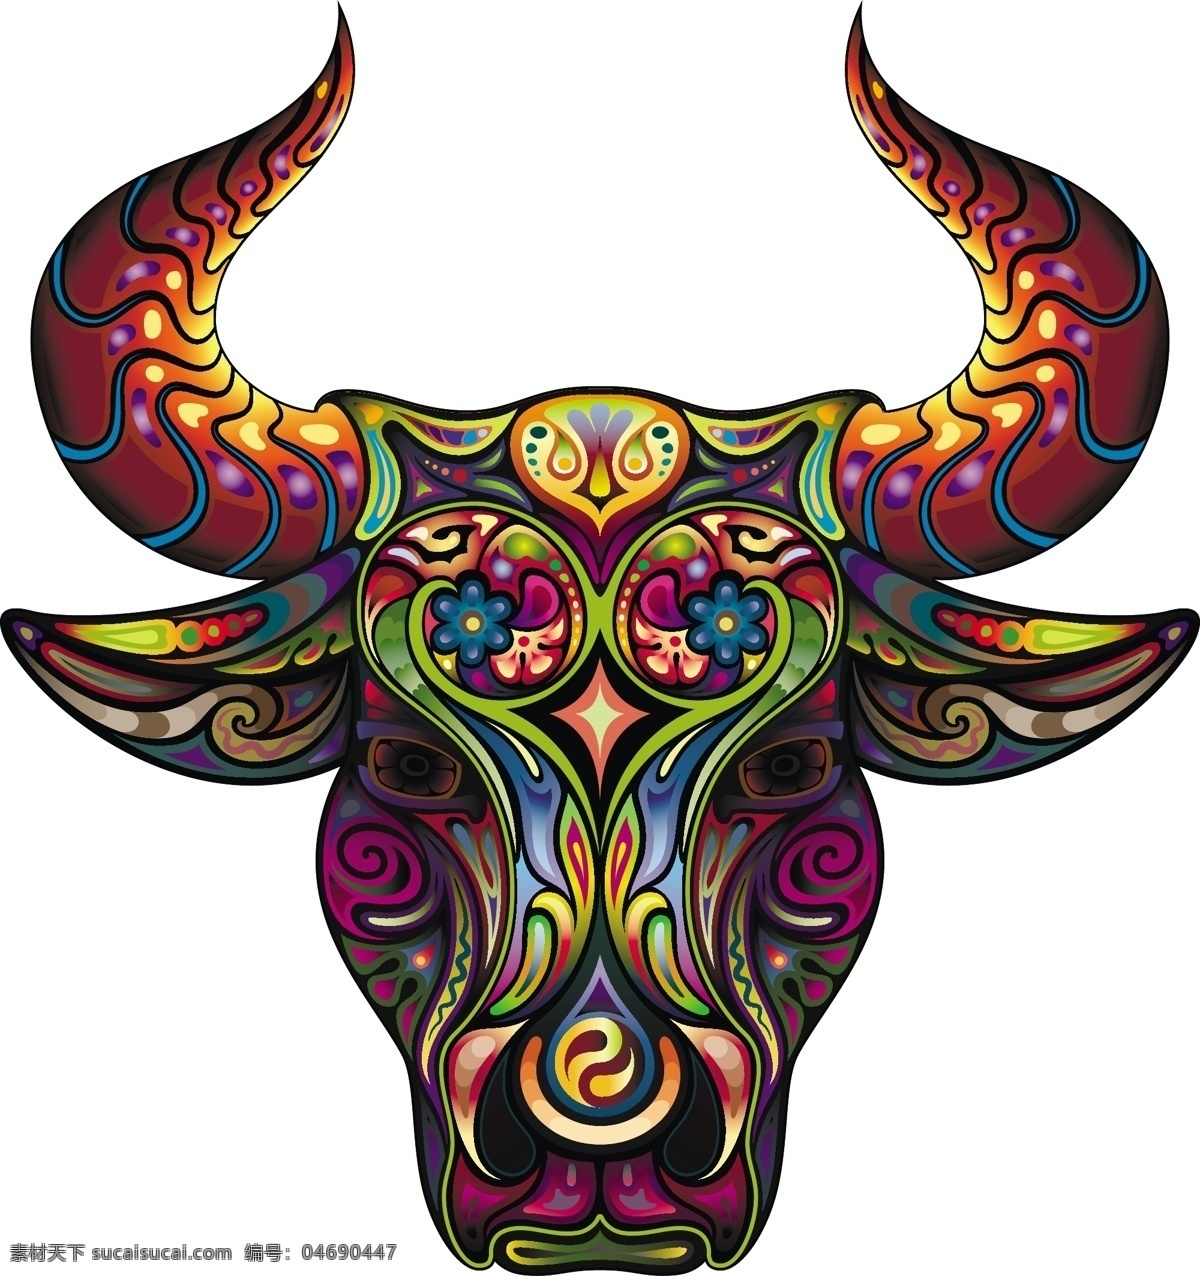 彩色 动物 纹身 刺青 图案 矢量 矢量素材 矢量图 创意设计 炫彩 炫丽 花纹 大象 壁虎 海马 羚羊